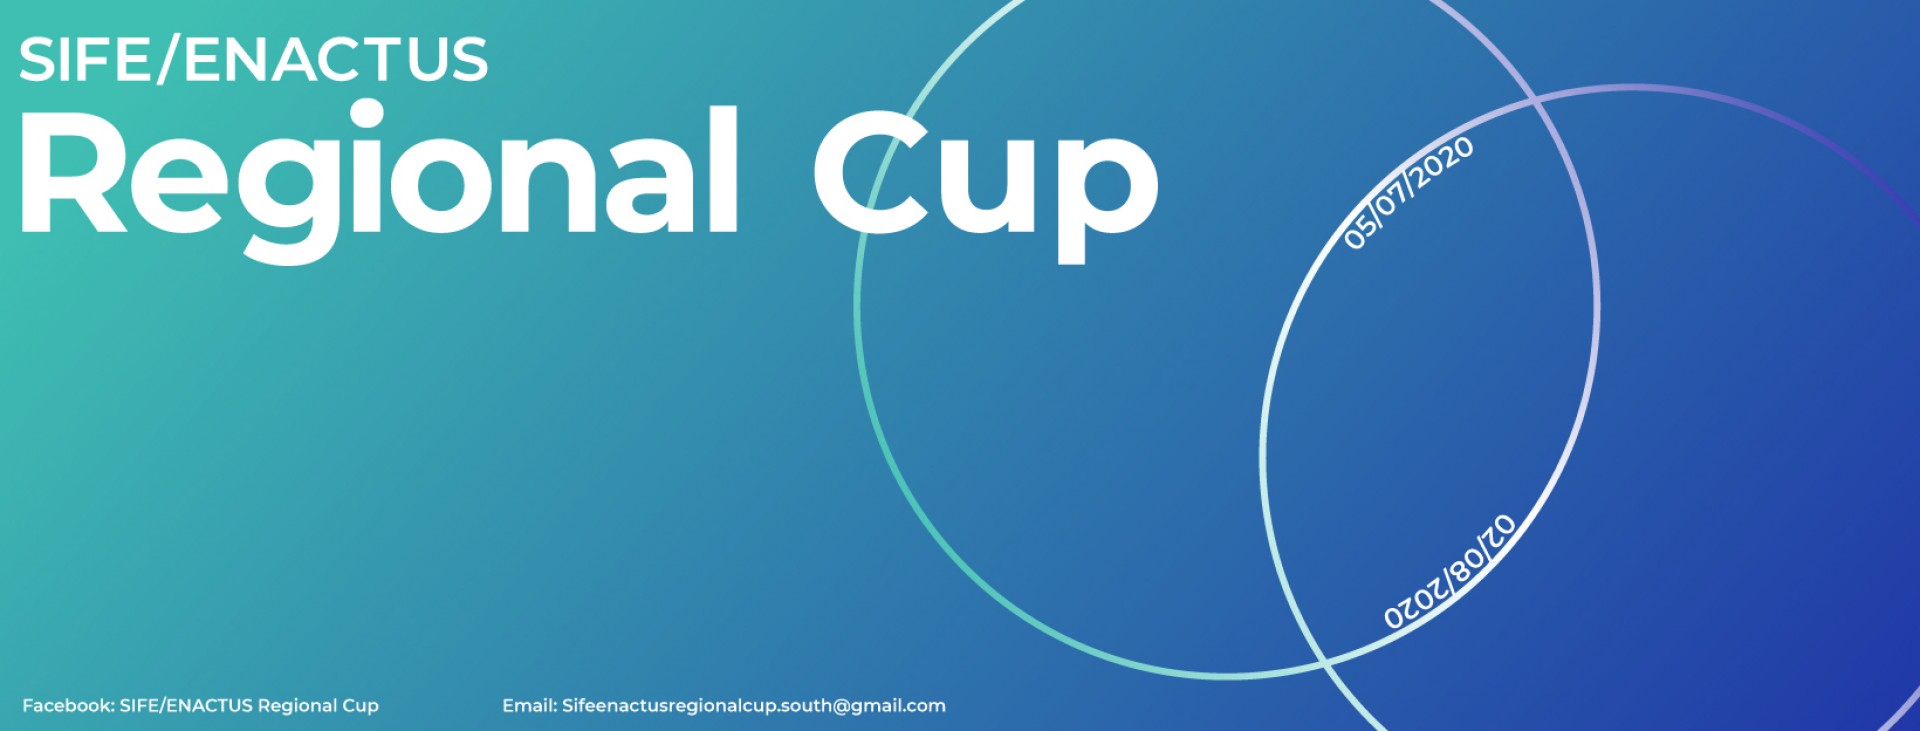 CHÍNH THỨC PHÁT ĐỘNG CUỘC THI SIFE/ ENACTUS REGIONAL CUP 2020